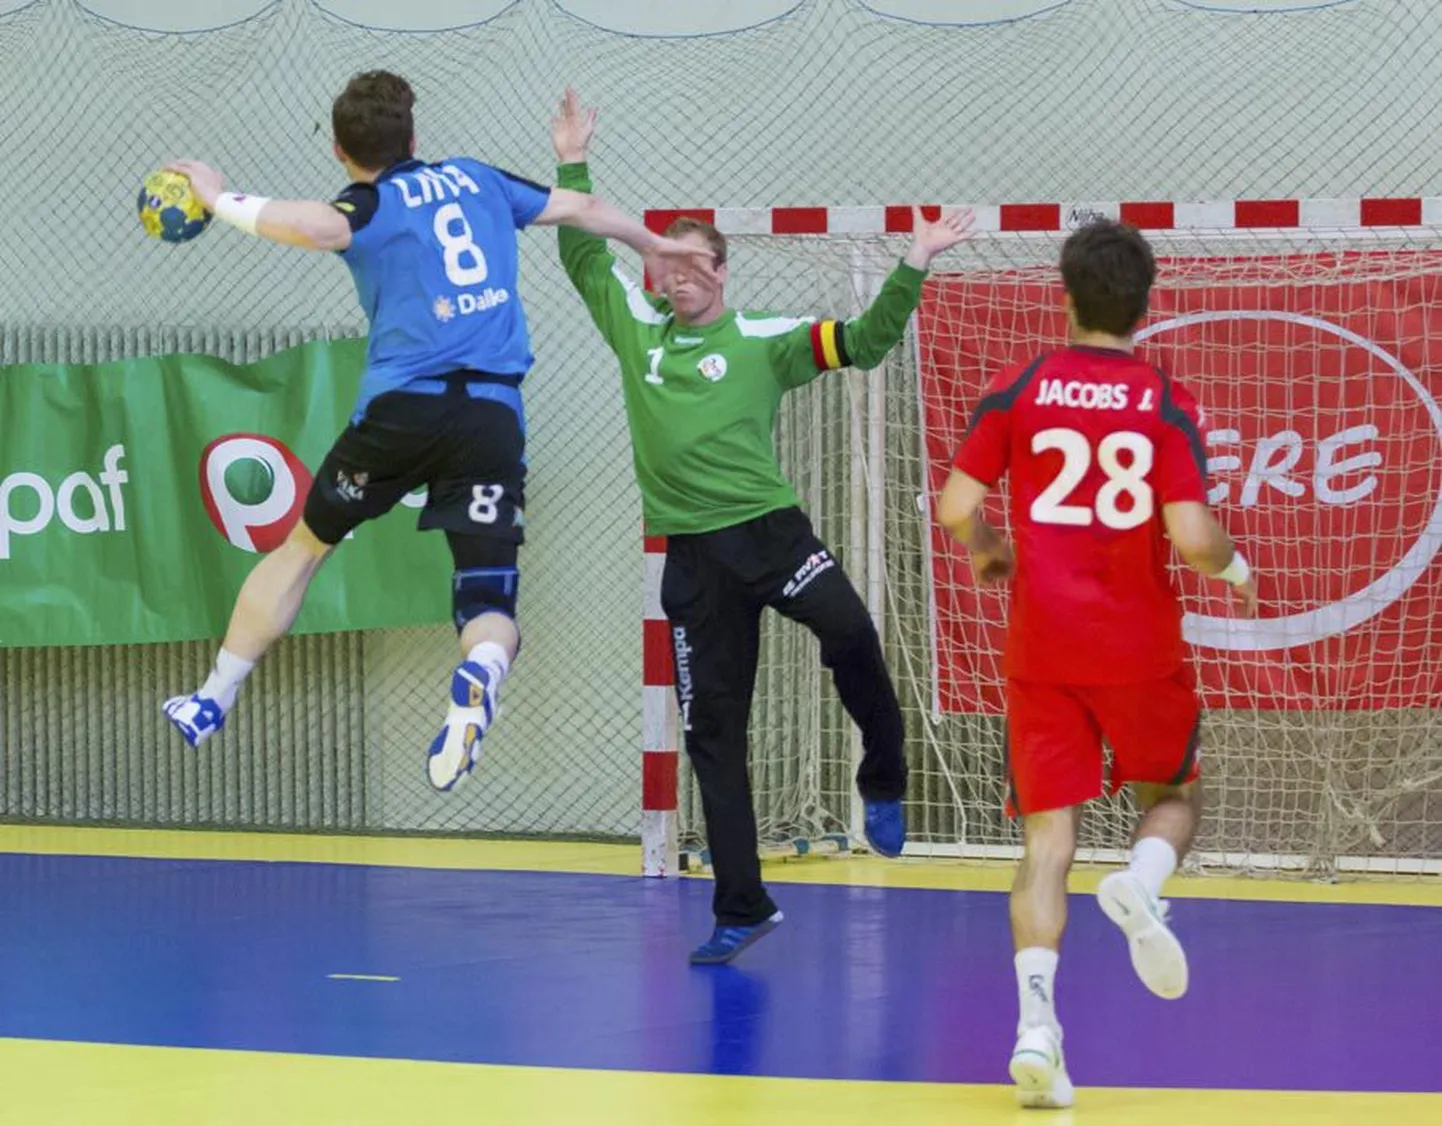 Eesti käsipallikoondis võitis Viljandi spordihoones Belgia meeskonda.